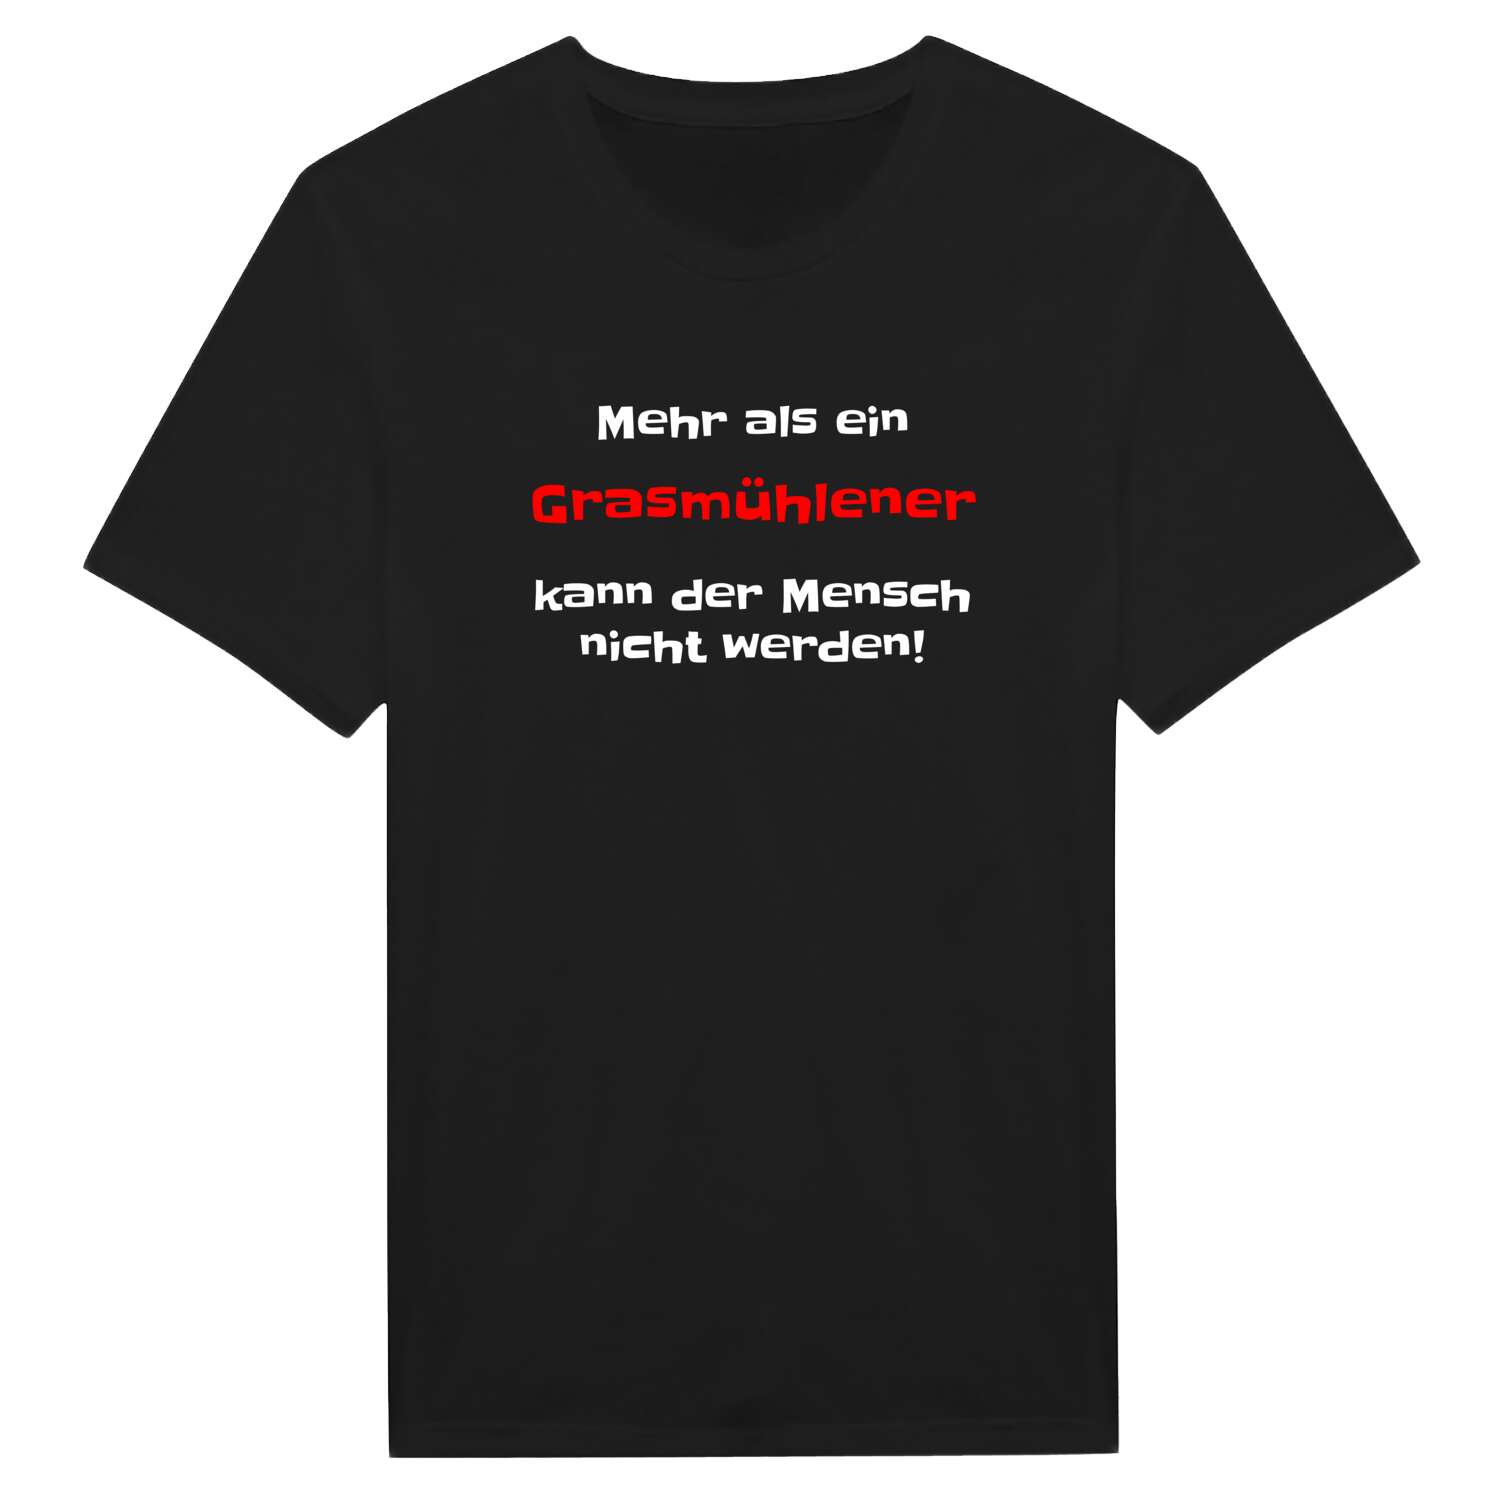 Grasmühle T-Shirt »Mehr als ein«